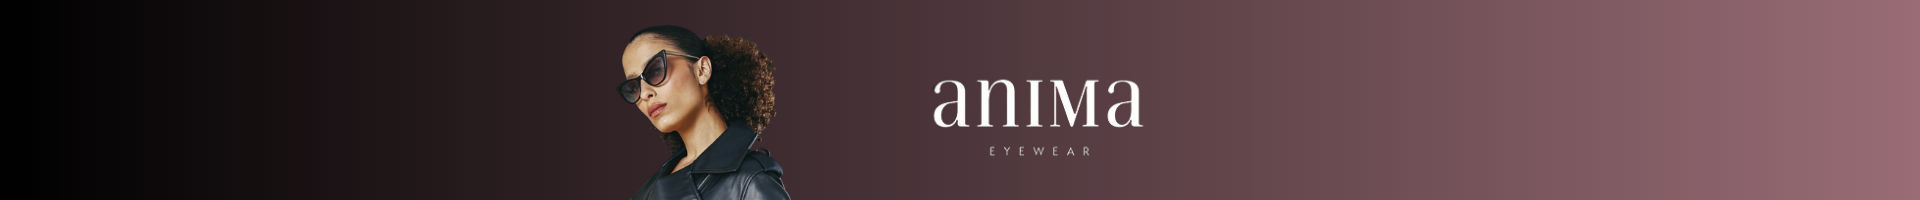 Anima Eyewear